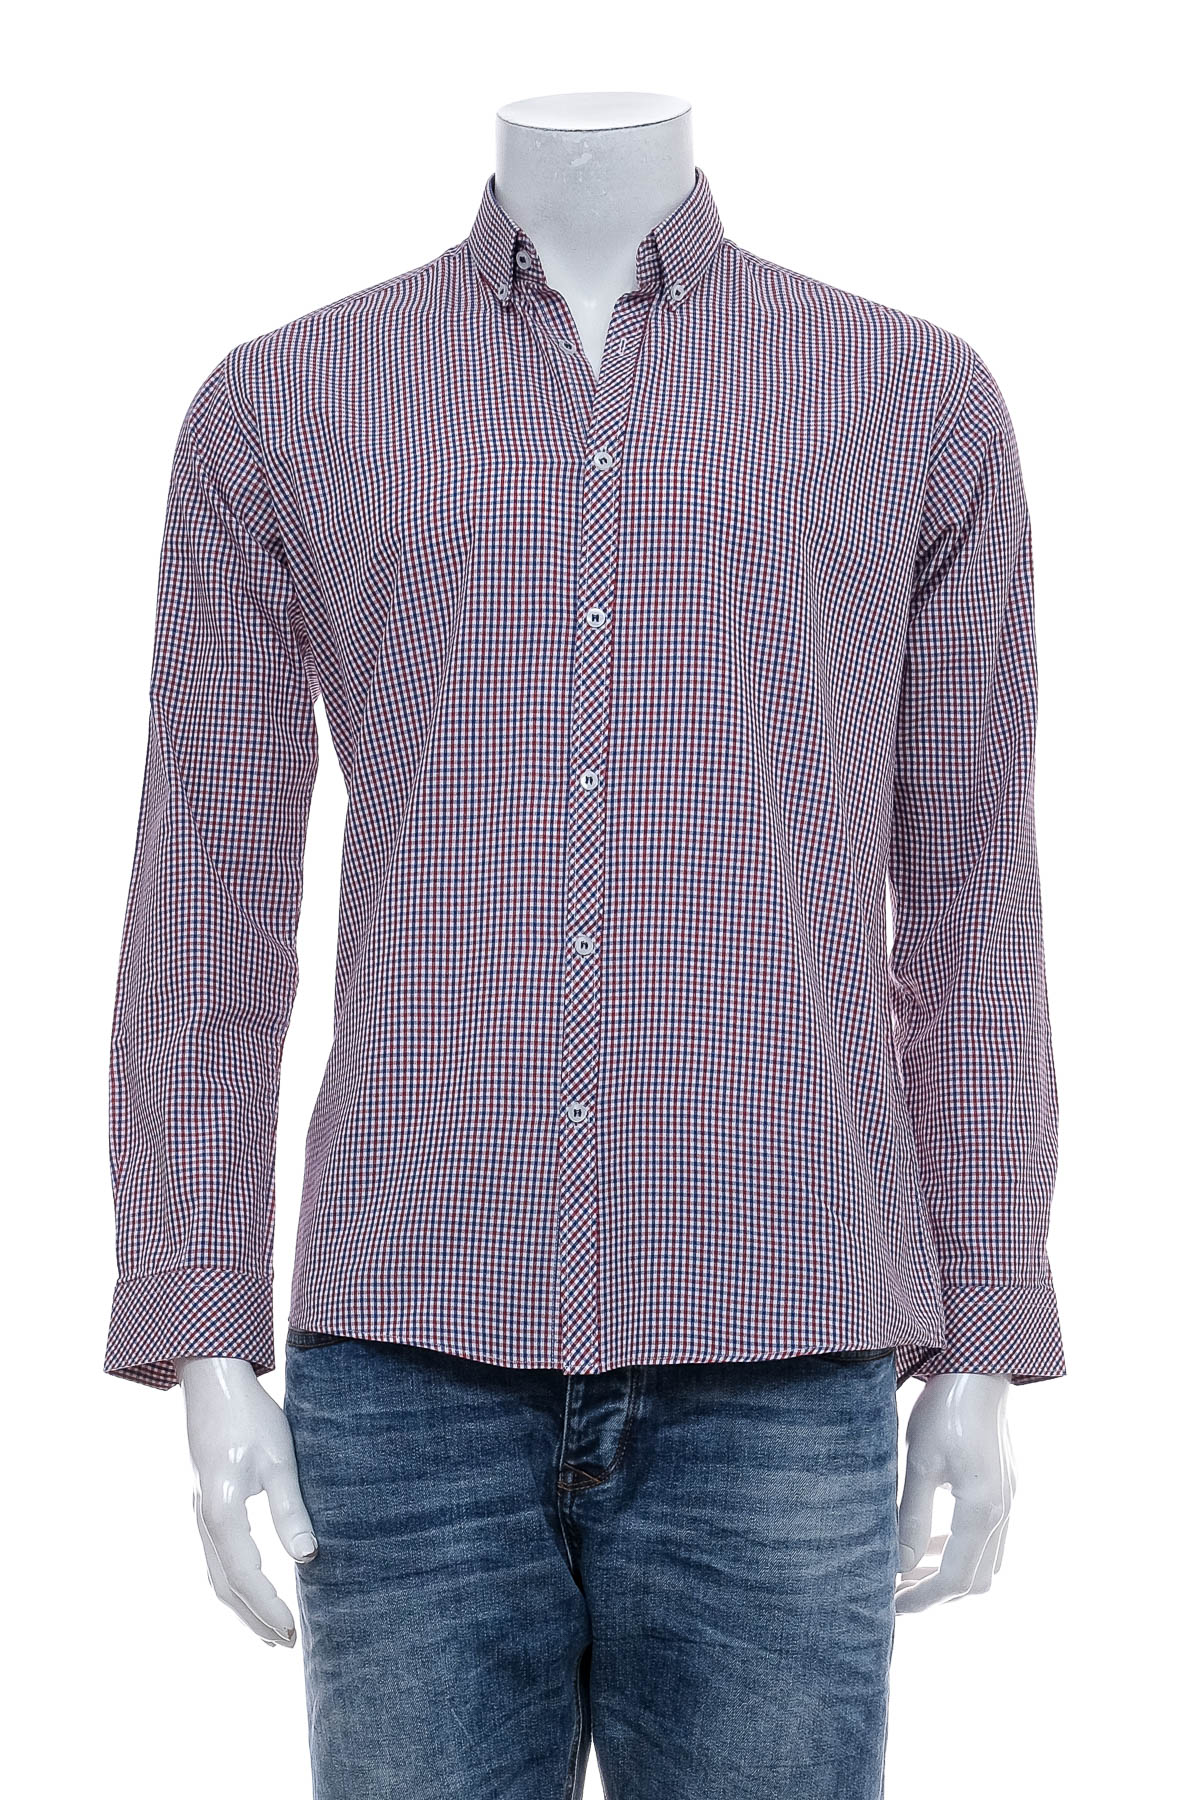 Ανδρικό πουκάμισο - Cedar Wood State - 0